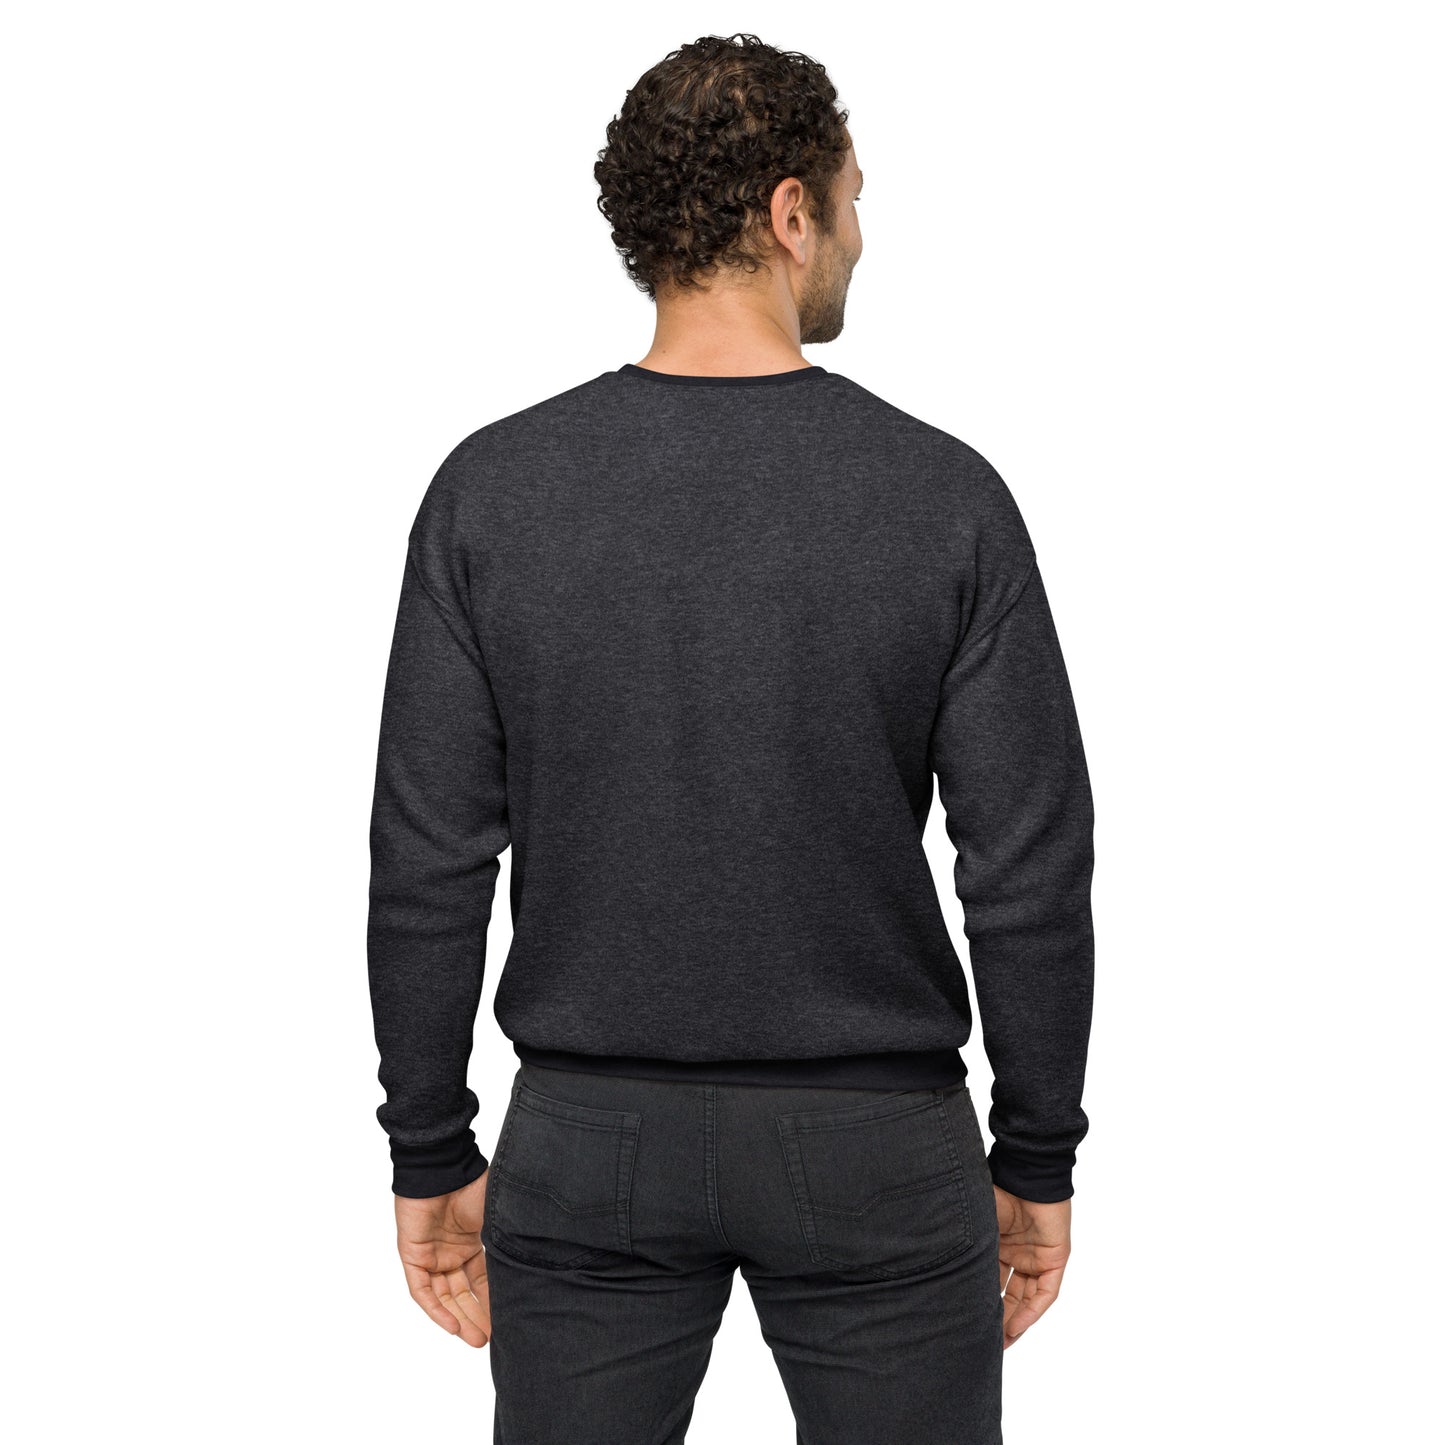 Men's sueded fleece sweatshirt